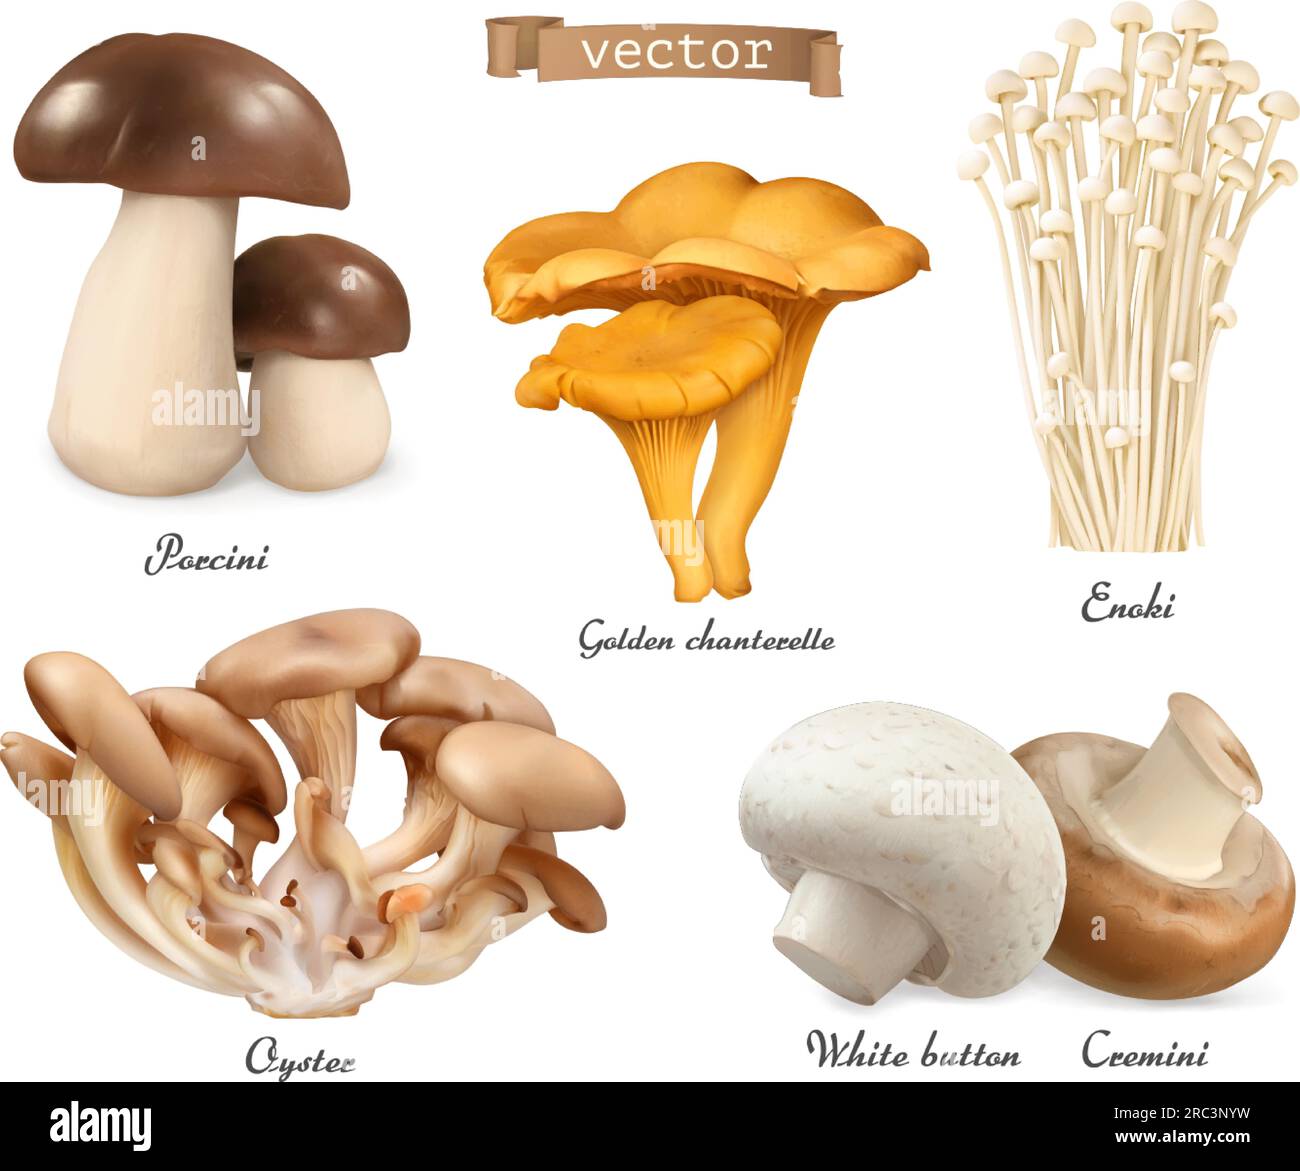 Funghi commestibili. Porcini, cantine dorate, enoki, funghi ostriche, cremini, pulsante bianco. set di oggetti 3d vettoriali realistici. Illustrazione degli alimenti Illustrazione Vettoriale